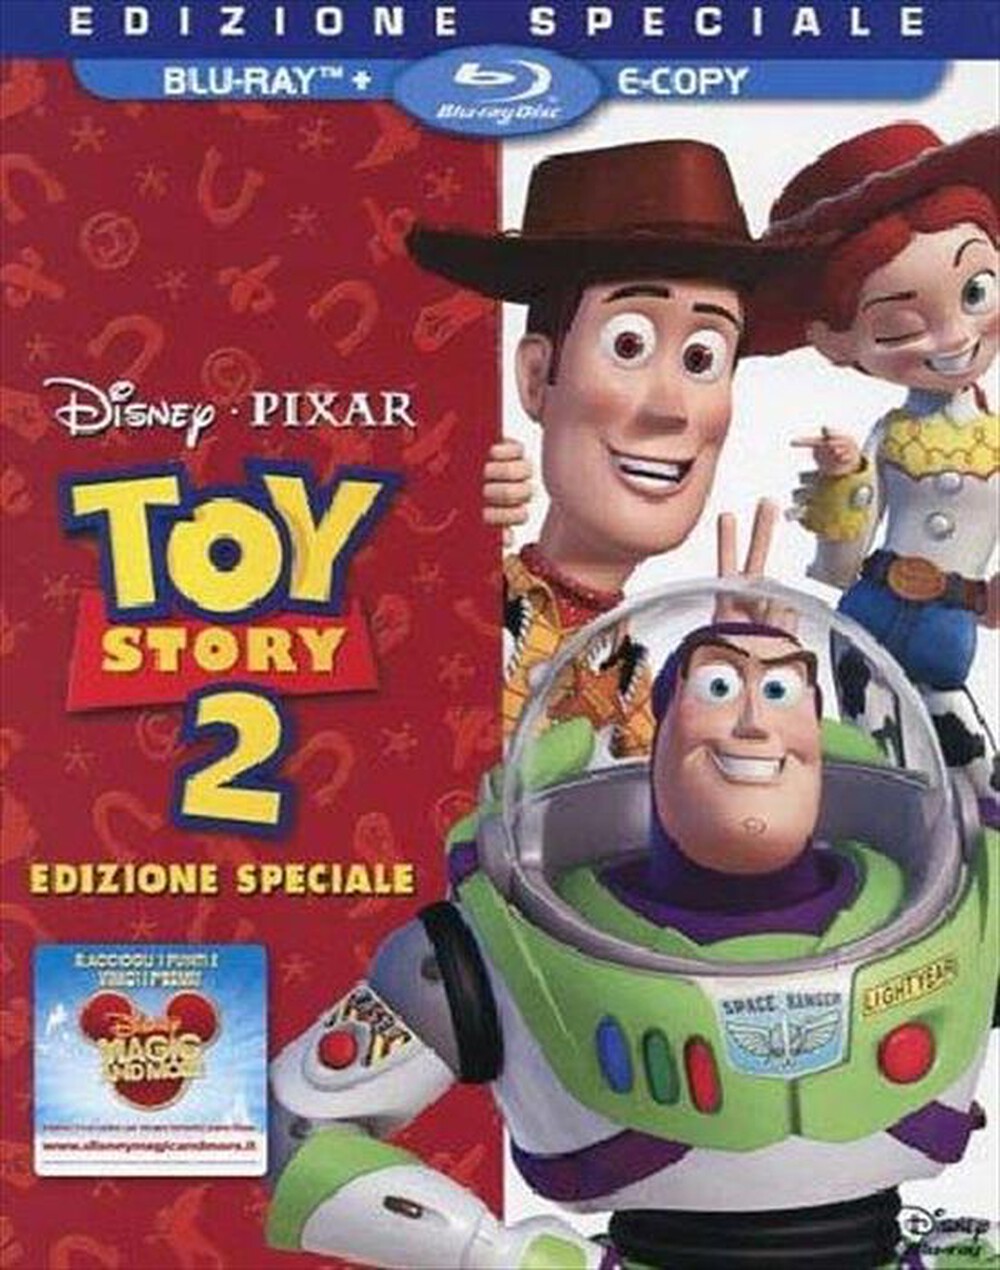 "WALT DISNEY - Toy Story 2 (Blu-Ray+E-Copy) - "